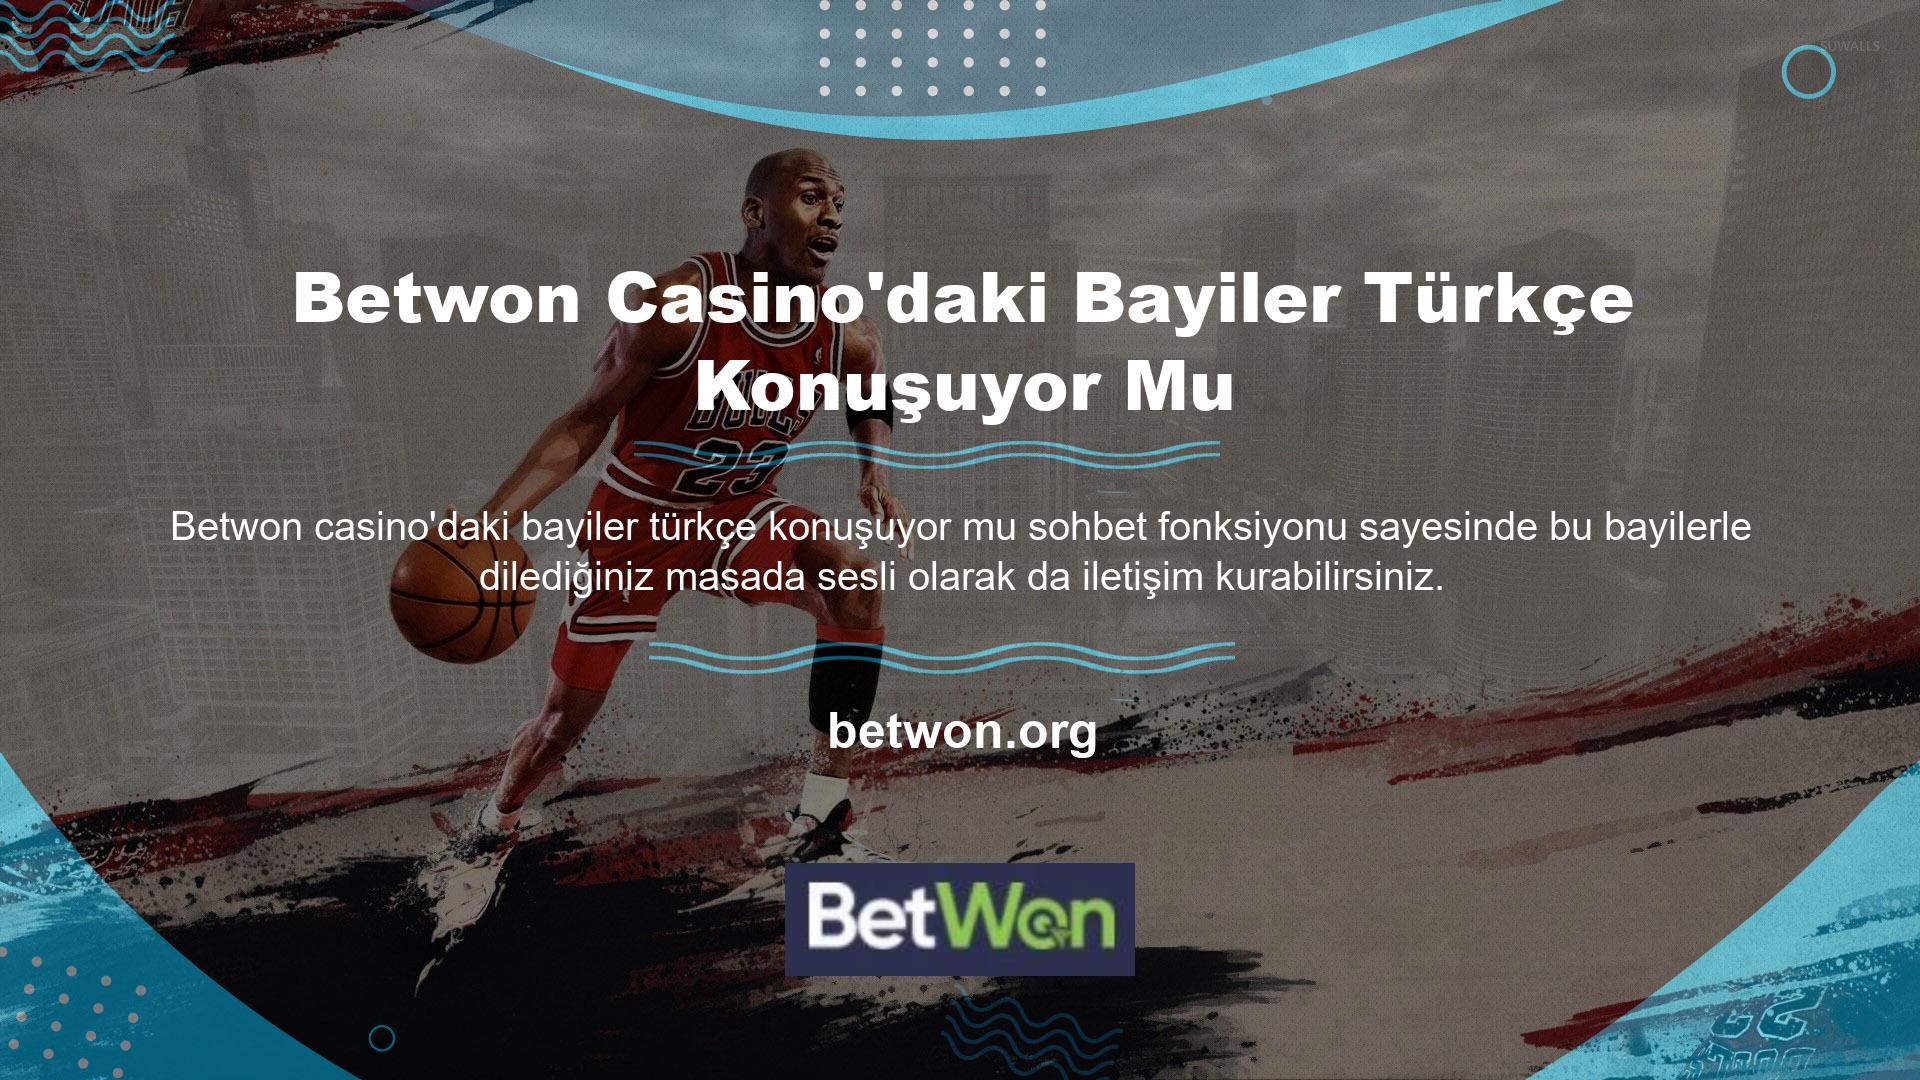 Bayilere yönelik Türkçe dil seçeneği ile Betwon Casino'da bayilerin Türkçe konuşması halinde dil desteği de kendini göstermektedir